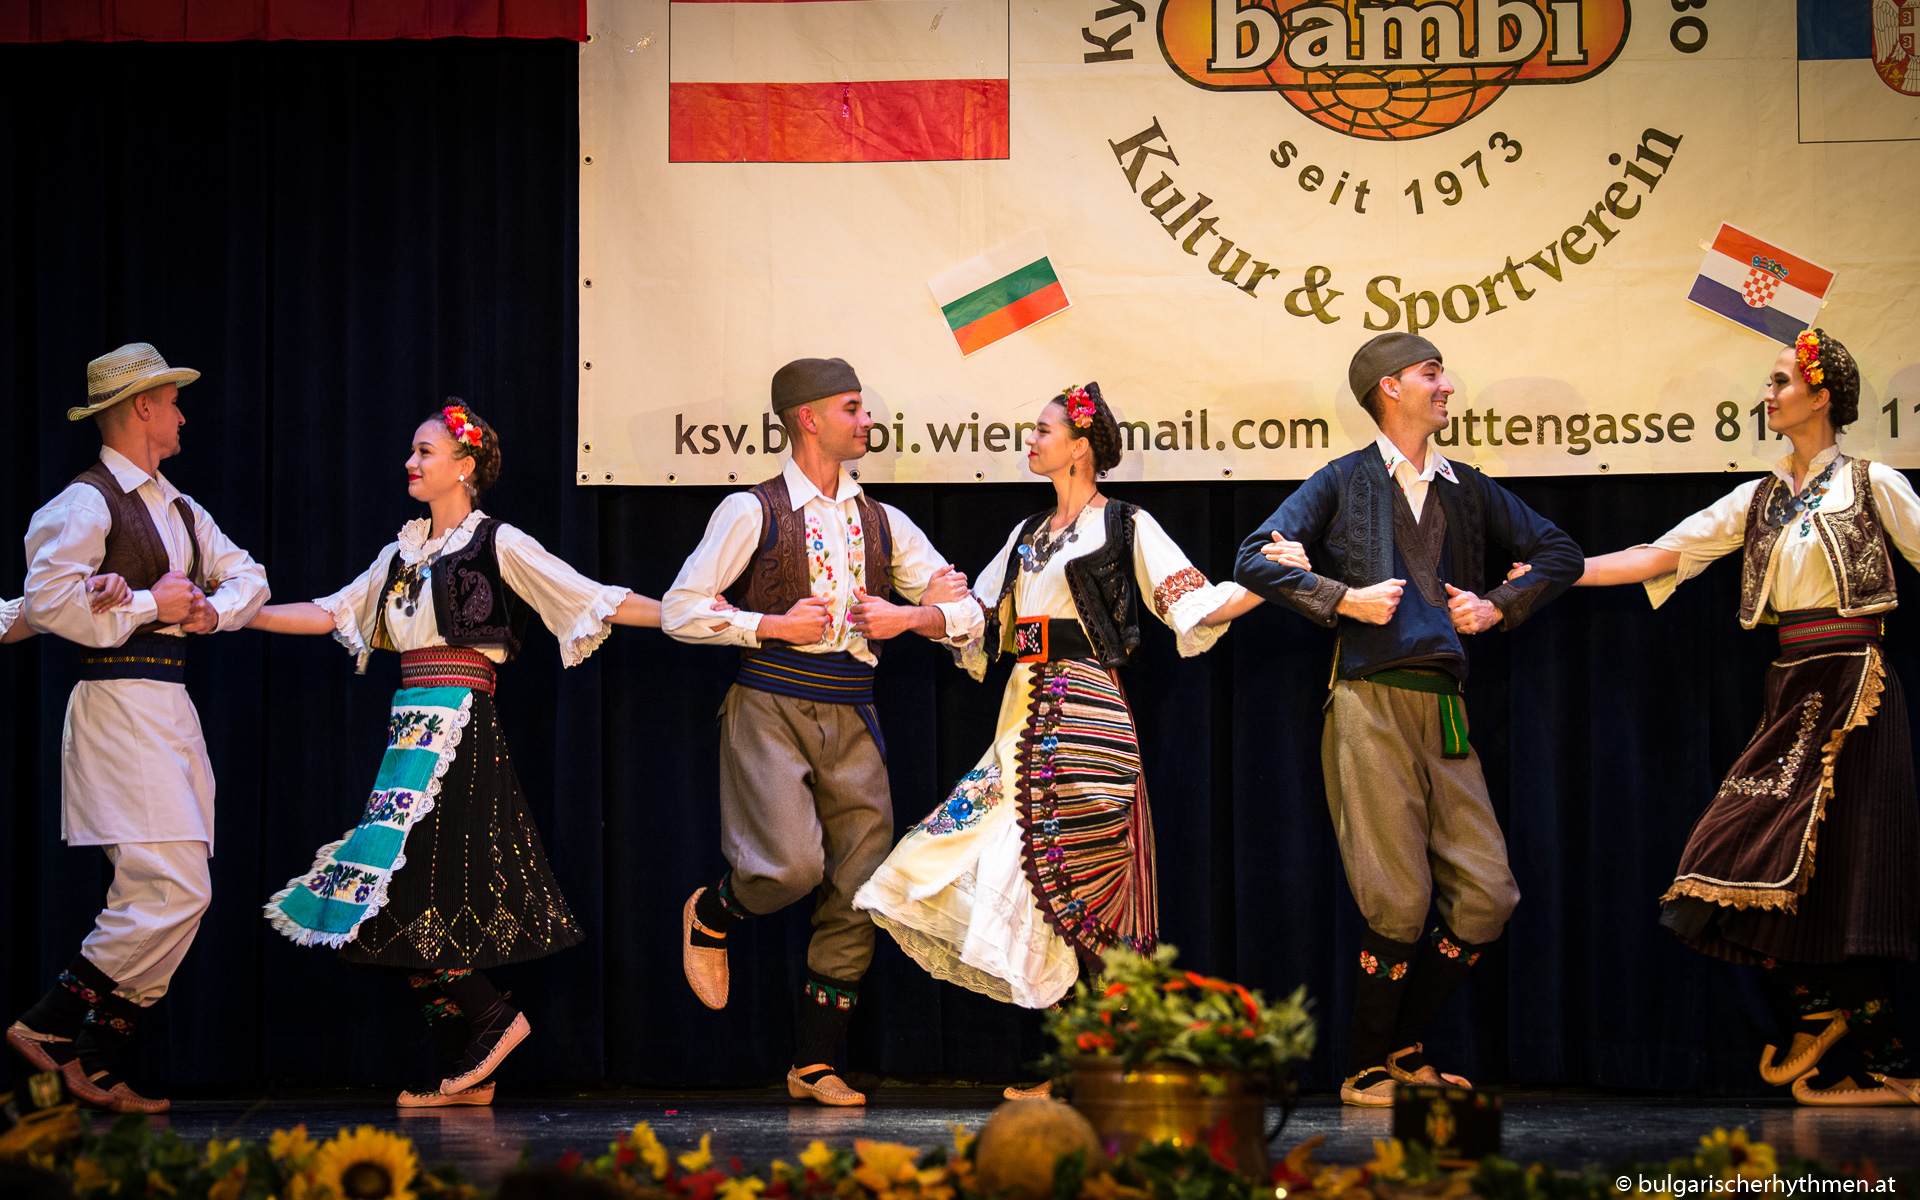 Novi klijenti:Plešemo folklor i komuniciramo za Austrijski savez srpskog folklora i kulturno - sportsko društvo Bambi iz Beča u Austriji i Srbiji